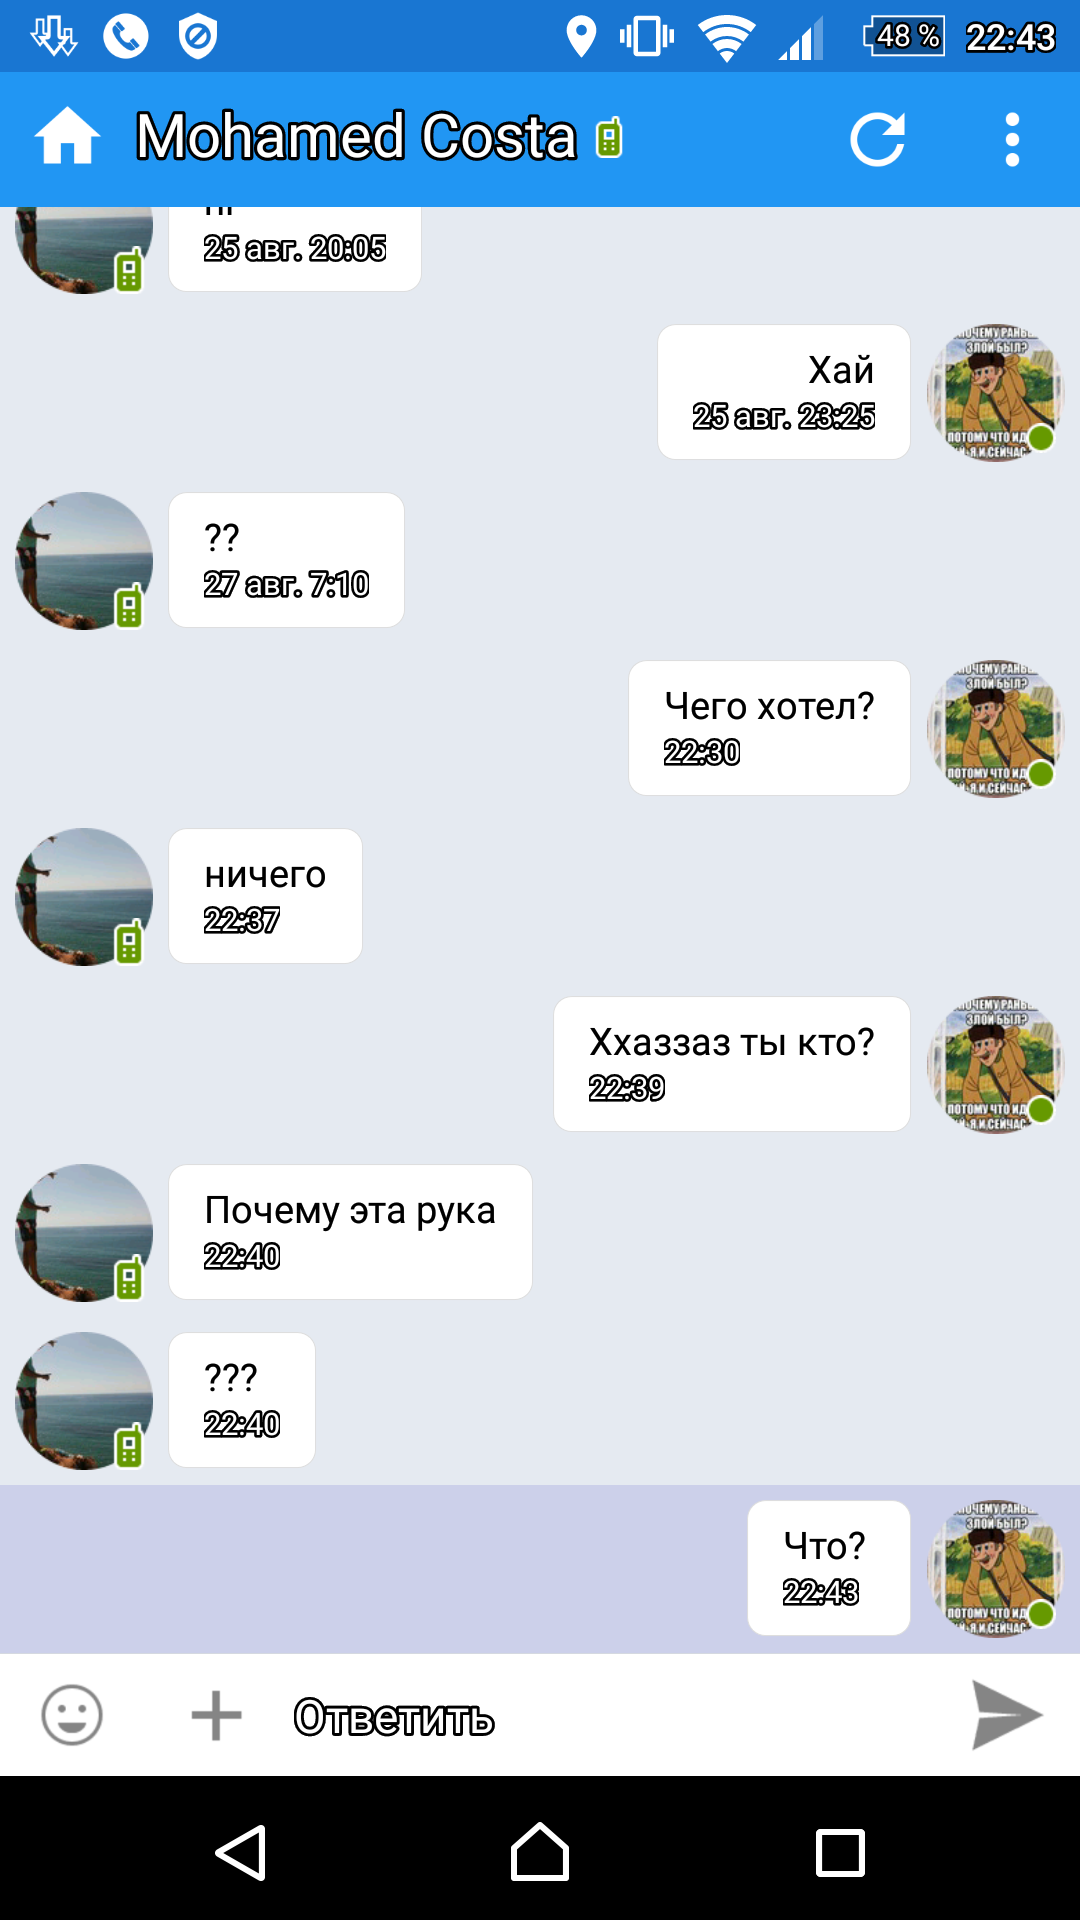 Саяногорск Инфо - screenshot_20160828-224352.png, Скачано: 516